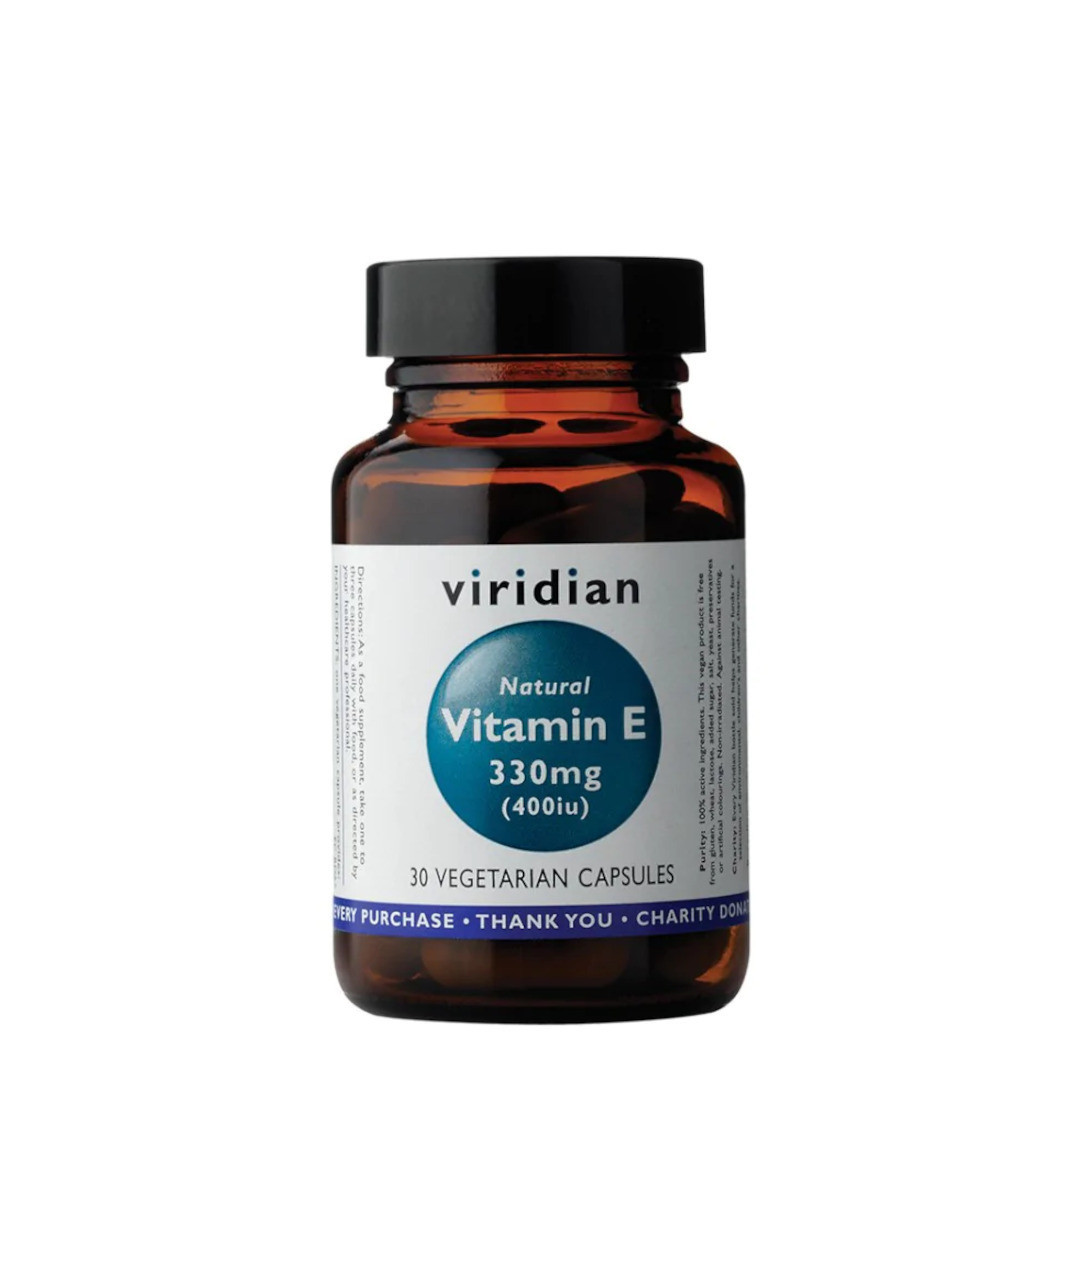 Natural Vitamin E 330mg (400iu)